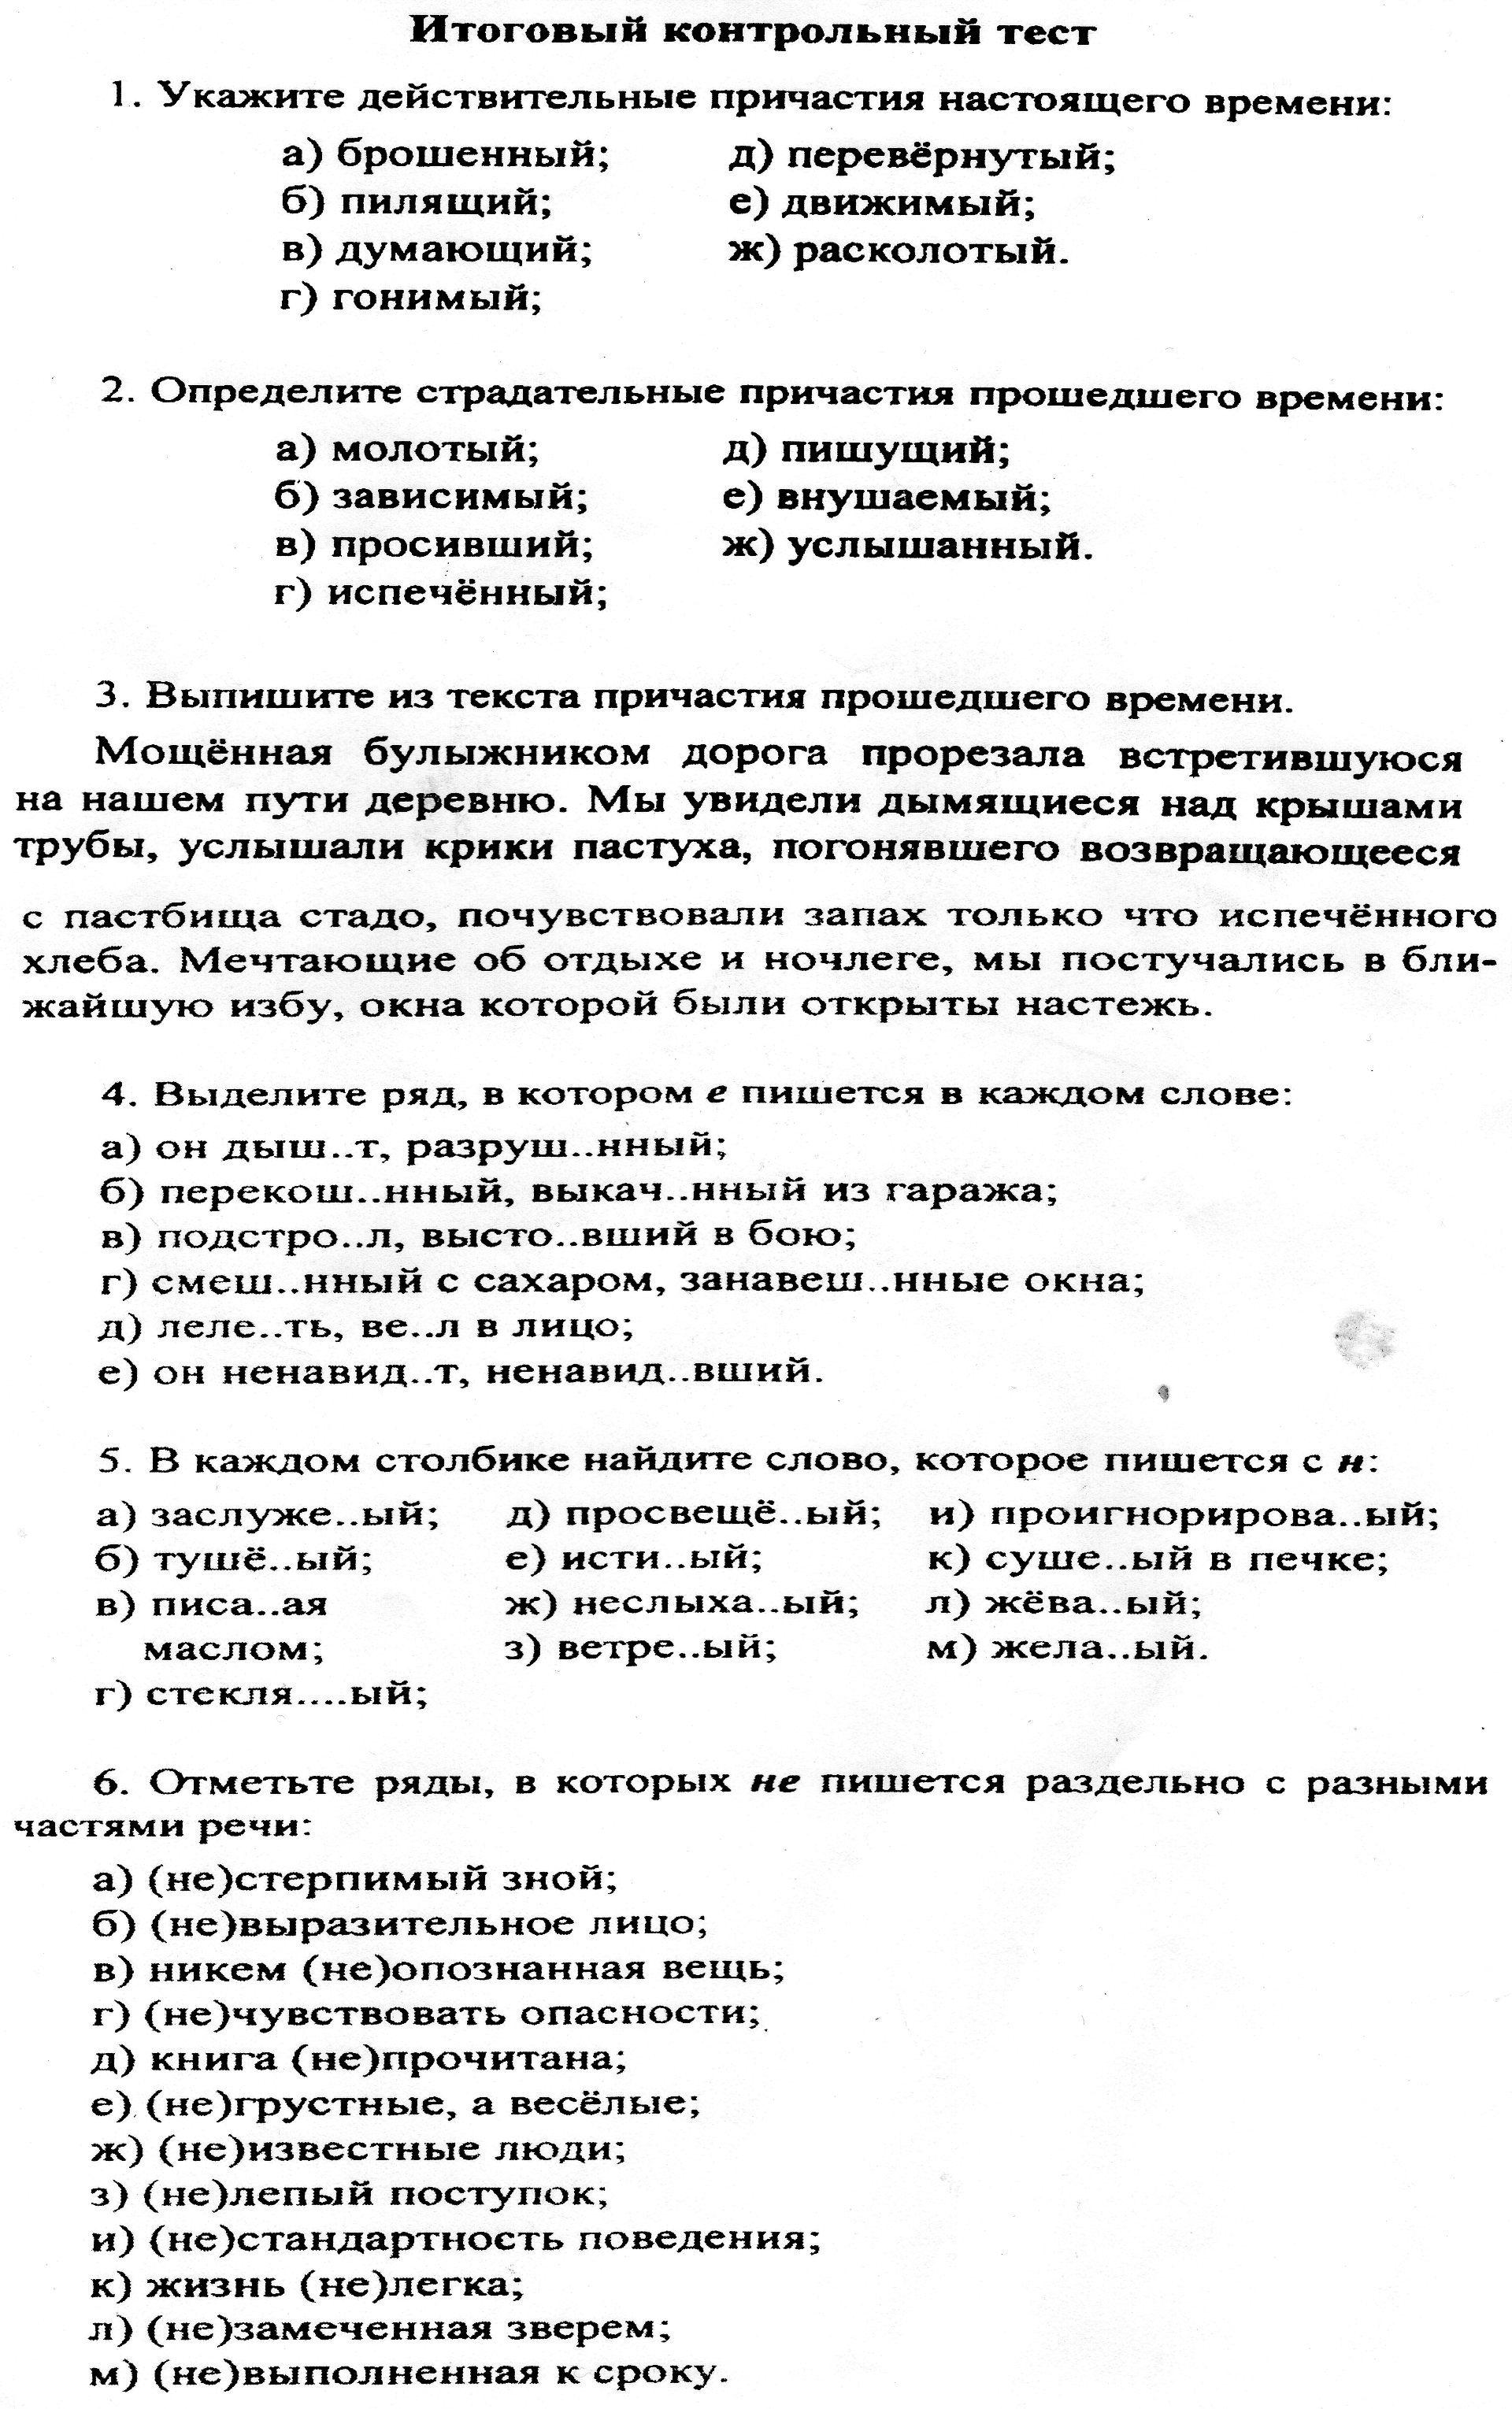 Тесты по русскому языку по основным темам курса 7 класса